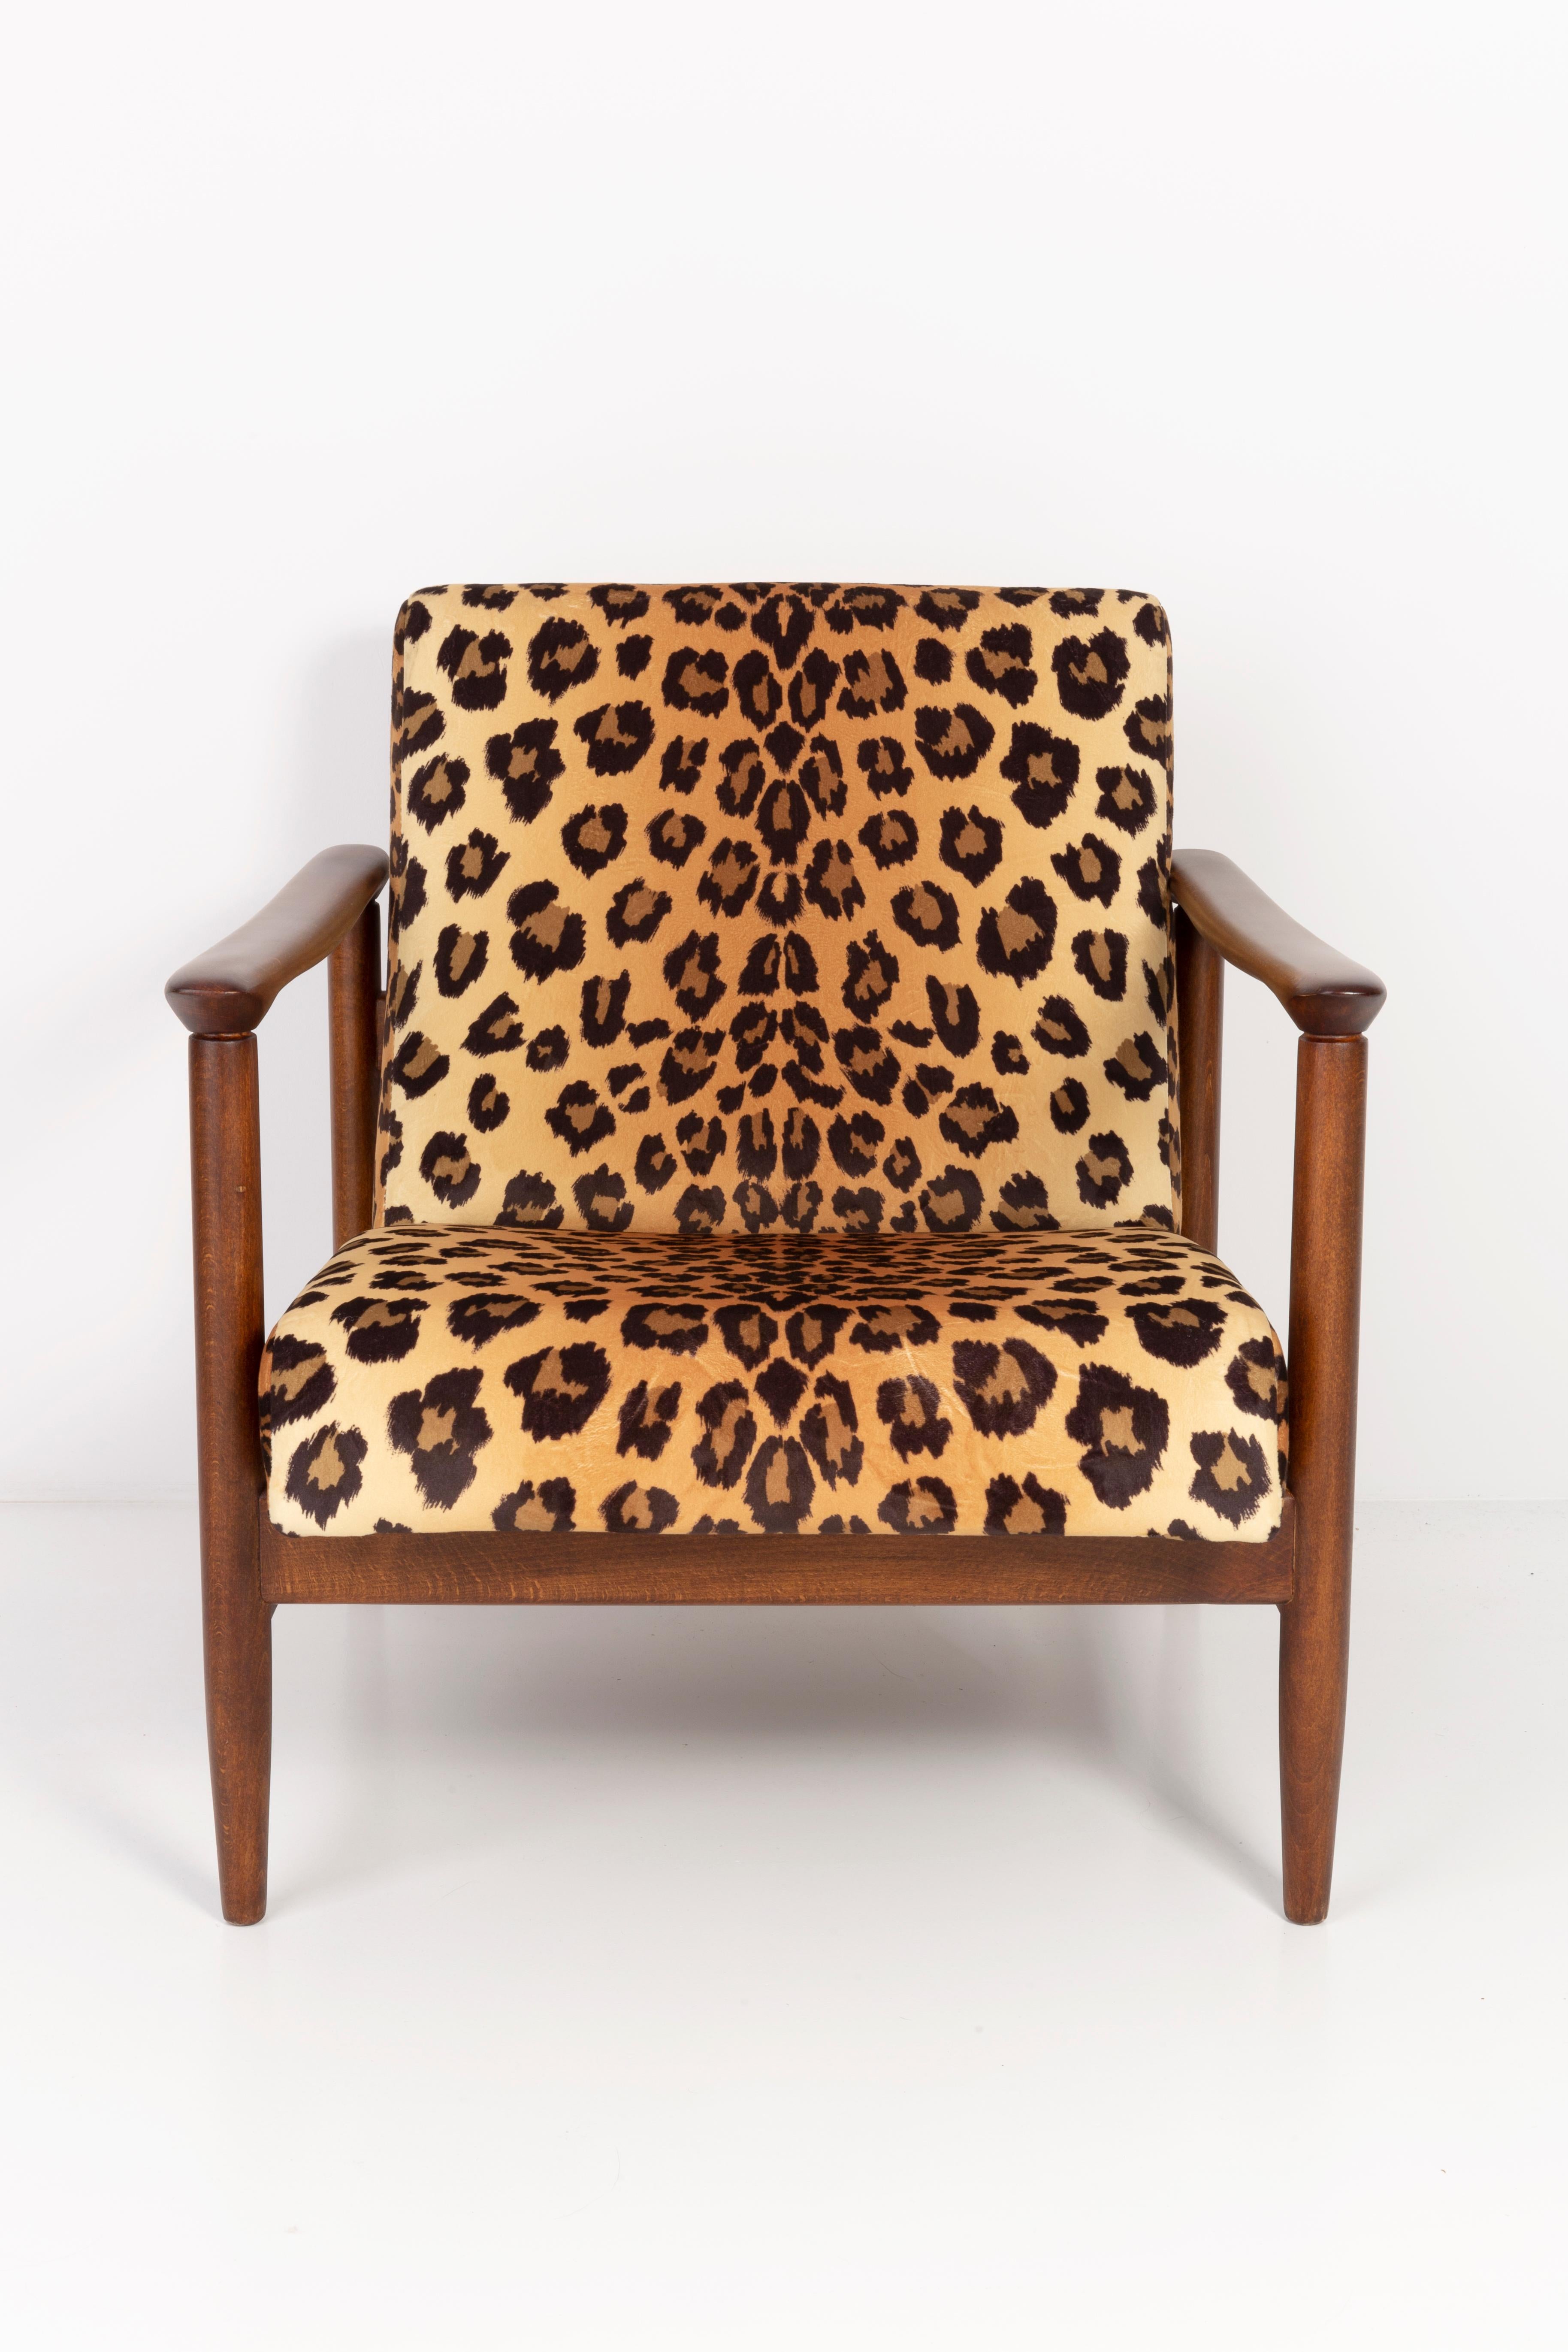 Wunderschöner Leoparden-Sessel GFM-142, entworfen von Edmund Homa, einem polnischen Architekten, Designer für Industriedesign und Innenarchitektur, Professor an der Akademie der Schönen Künste in Danzig.

Der Sessel wurde in den 1960er Jahren in der